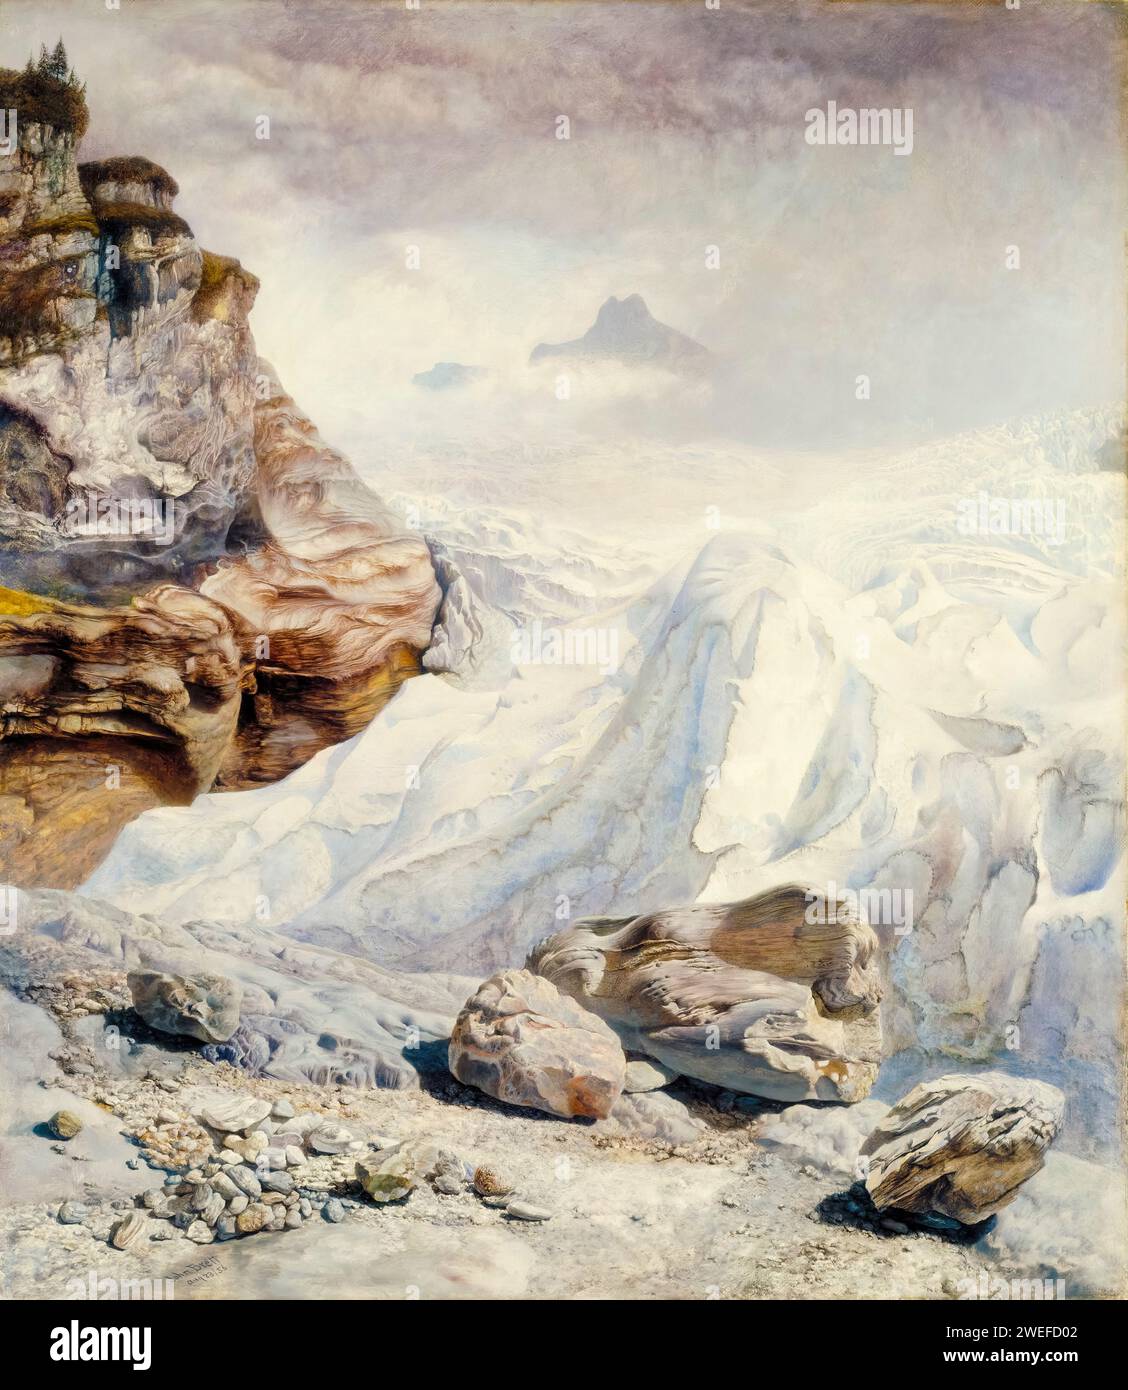 John Brett, Glacier of Rosenlaui, landscape painting in oil on canvas, 1856 Stock Photo